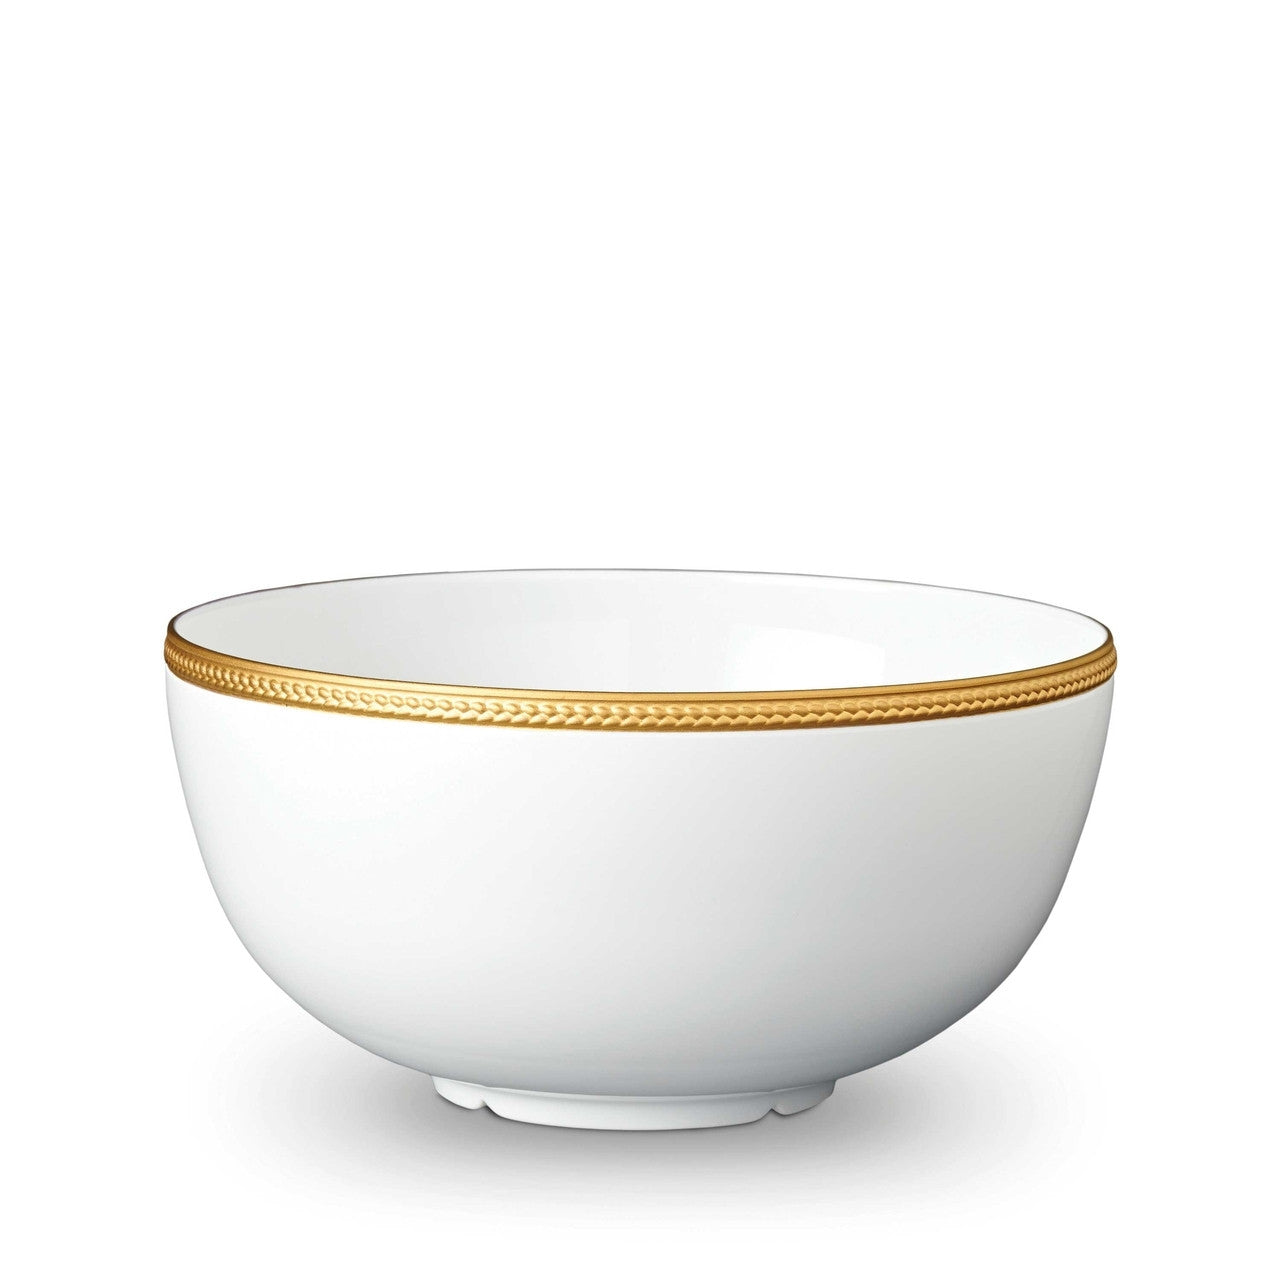 Soie Tressée Gold Serving Bowl - RSVP Style